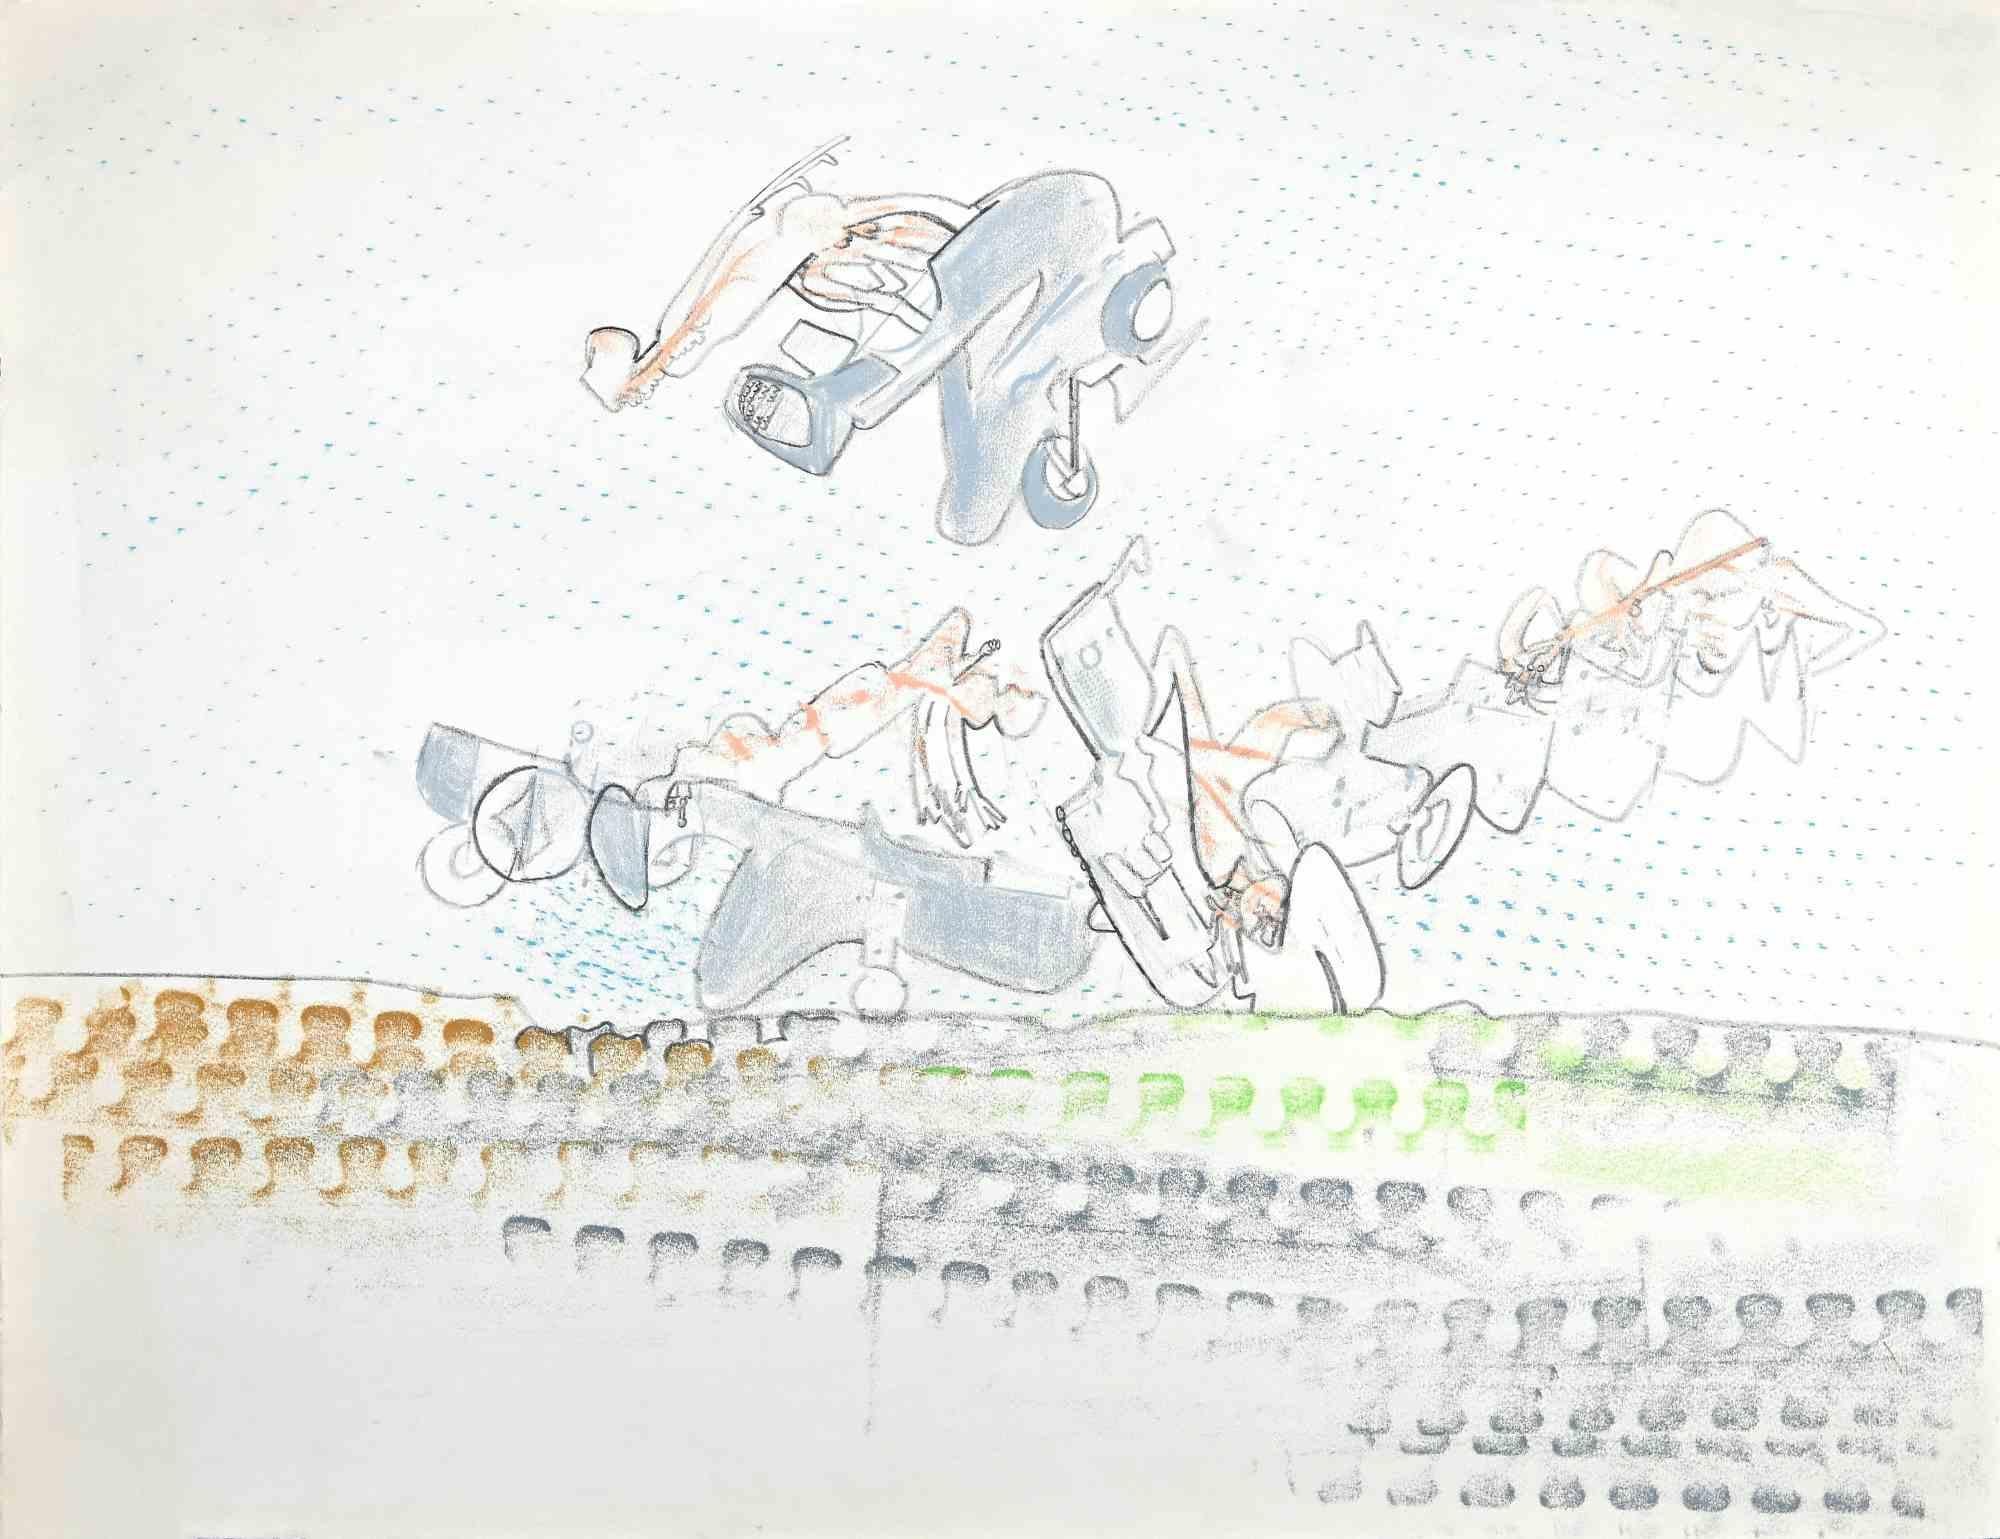 Composition ist eine wunderbare Pastellzeichnung auf Papier, die in den frühen 1970er Jahren von dem surrealistischen Künstler  Sebastián Matta (Santiago de Chile, 1911 - Civitavecchia, 2002).

Nicht signiert, in sehr gutem Zustand.

Provenienz: